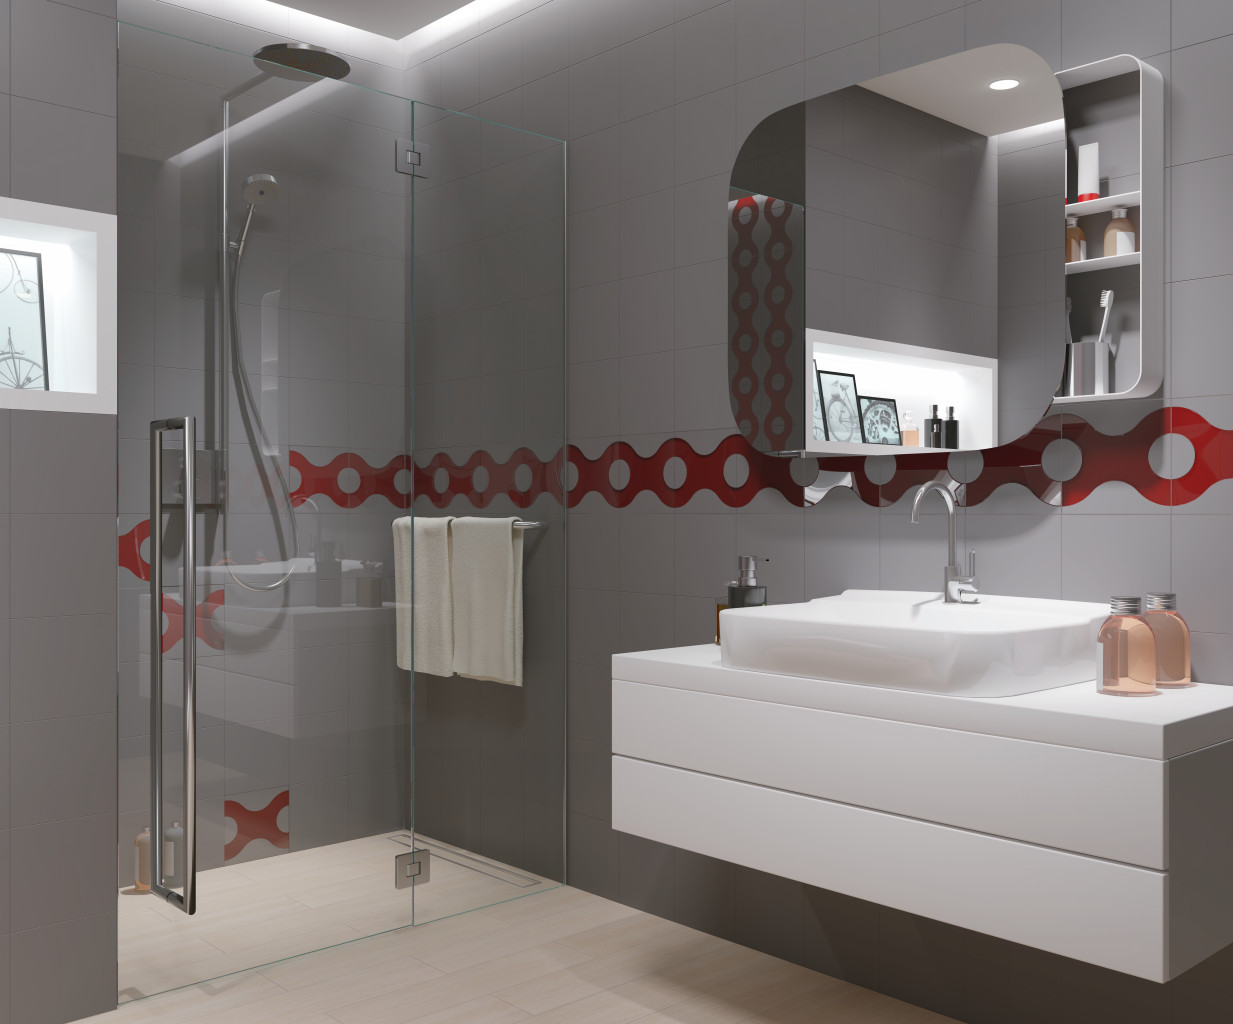 Jakie płytki wybrać na ścianę w łazience, aby nadać jej nowoczesny wygląd?